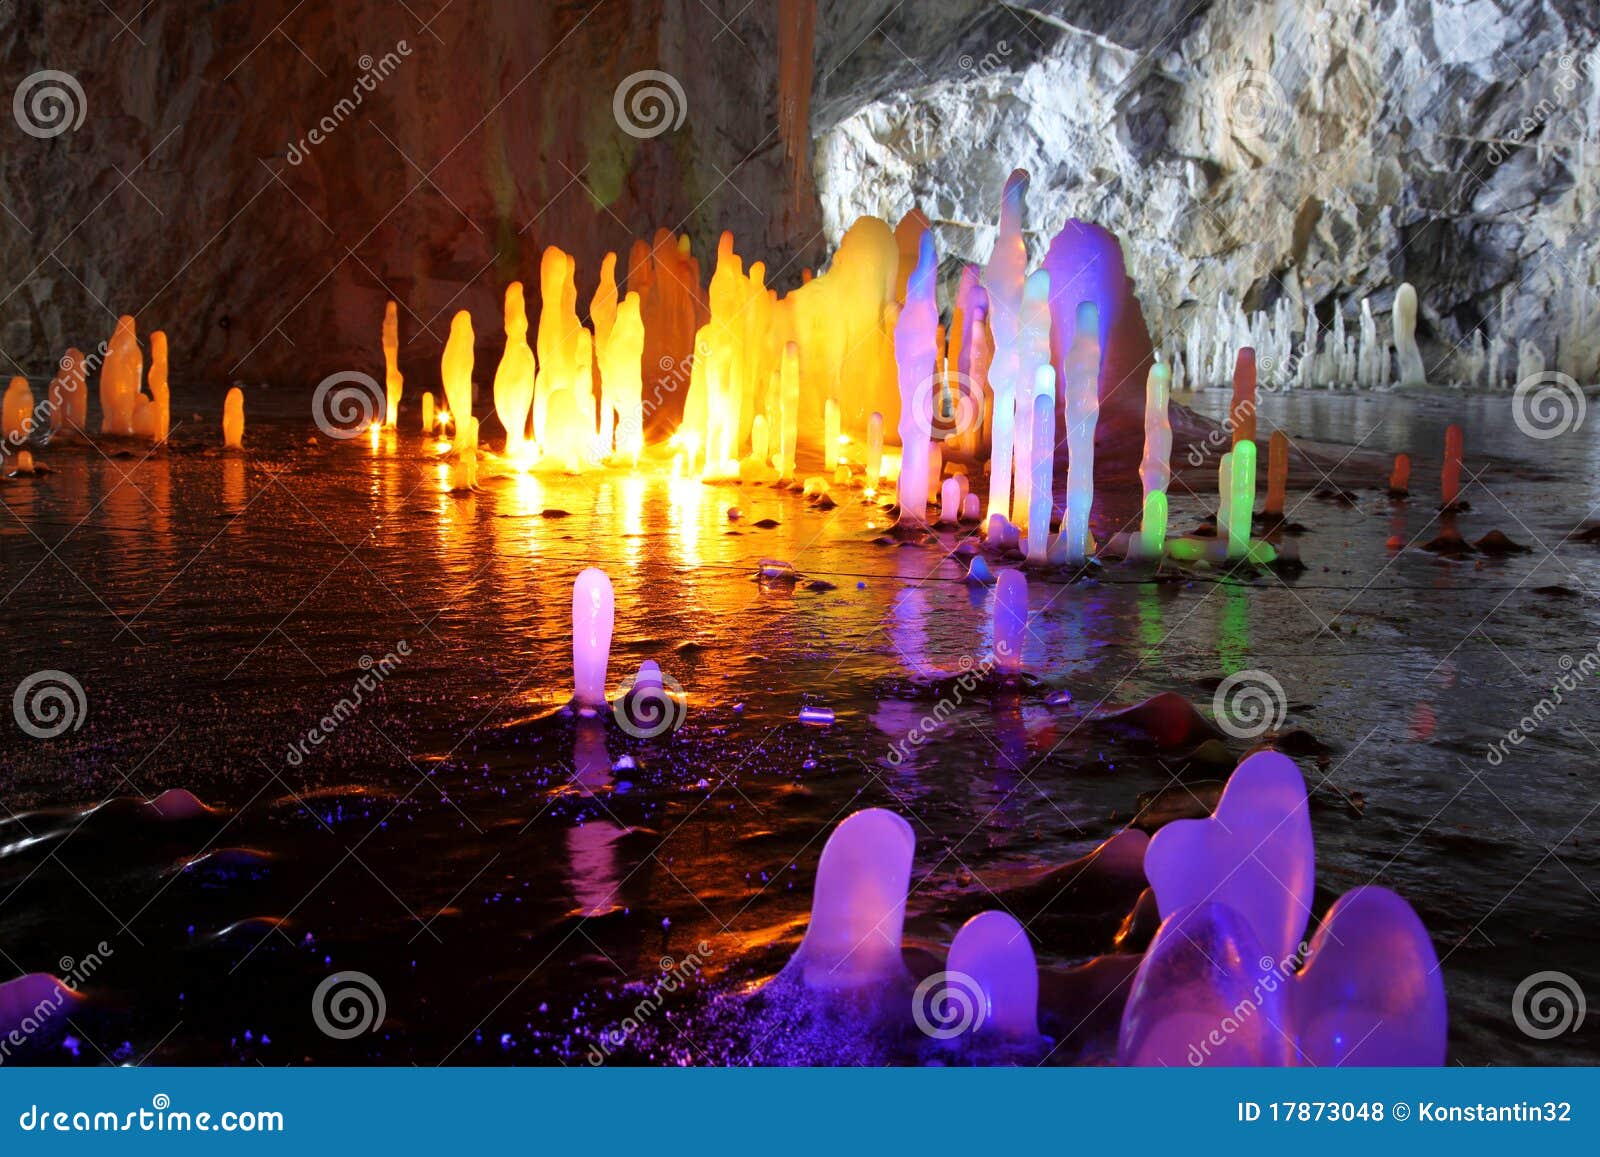 amazing stalagmite illuminations in cave